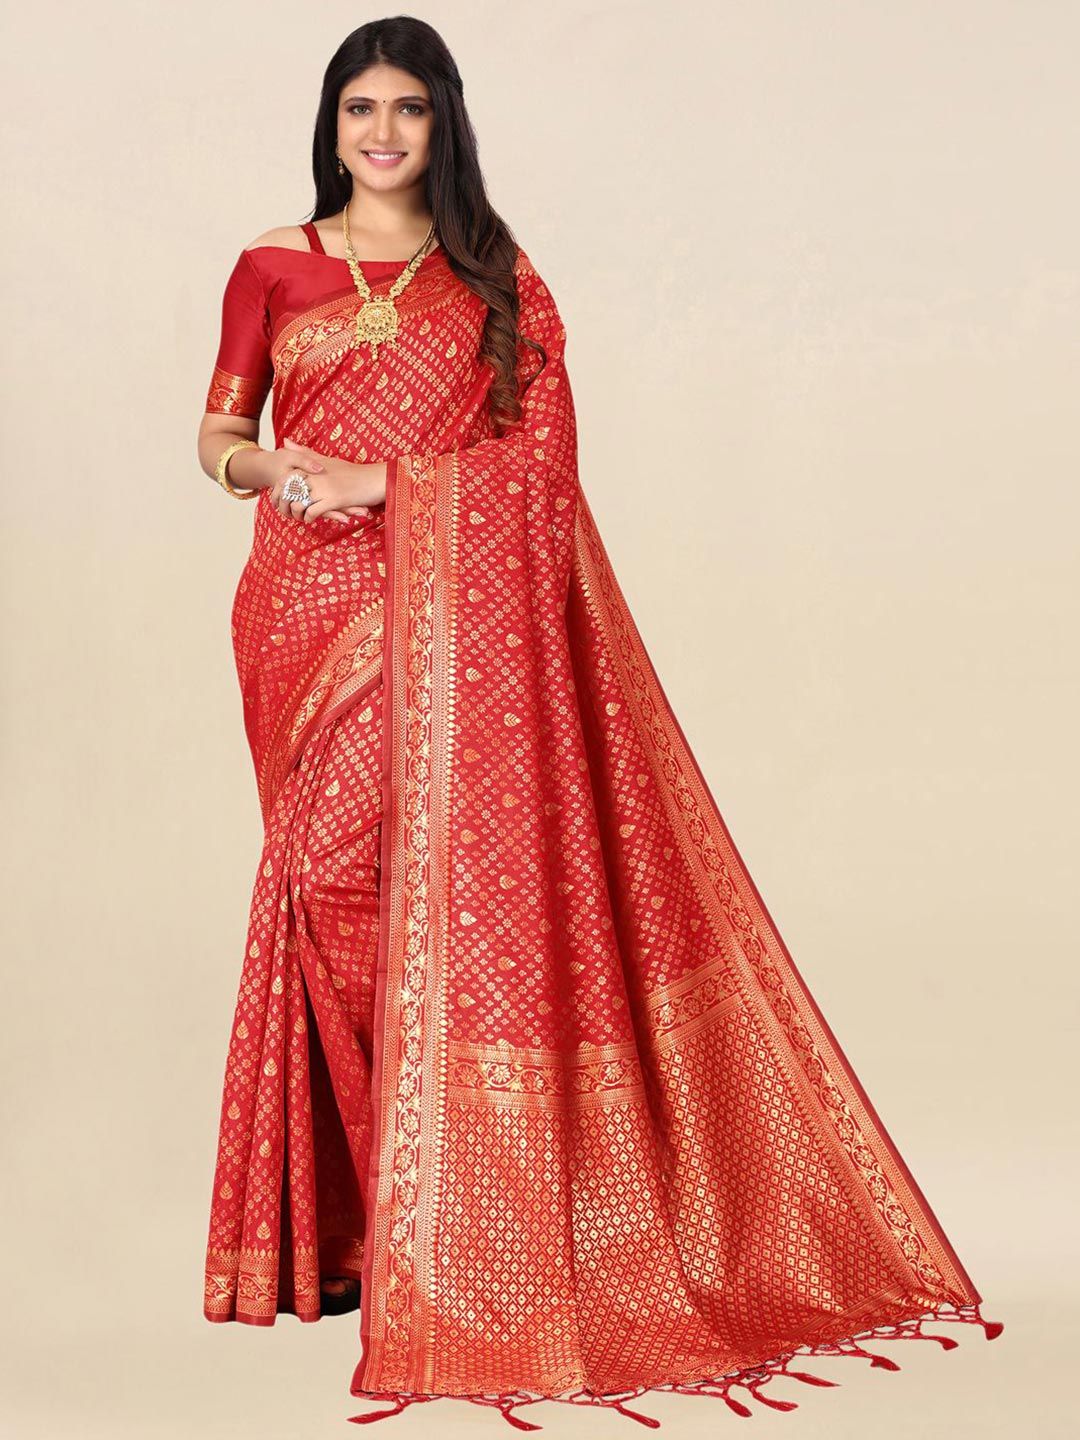 Satrani Red & Gold-Toned Woven Design Zari Saree Price in India